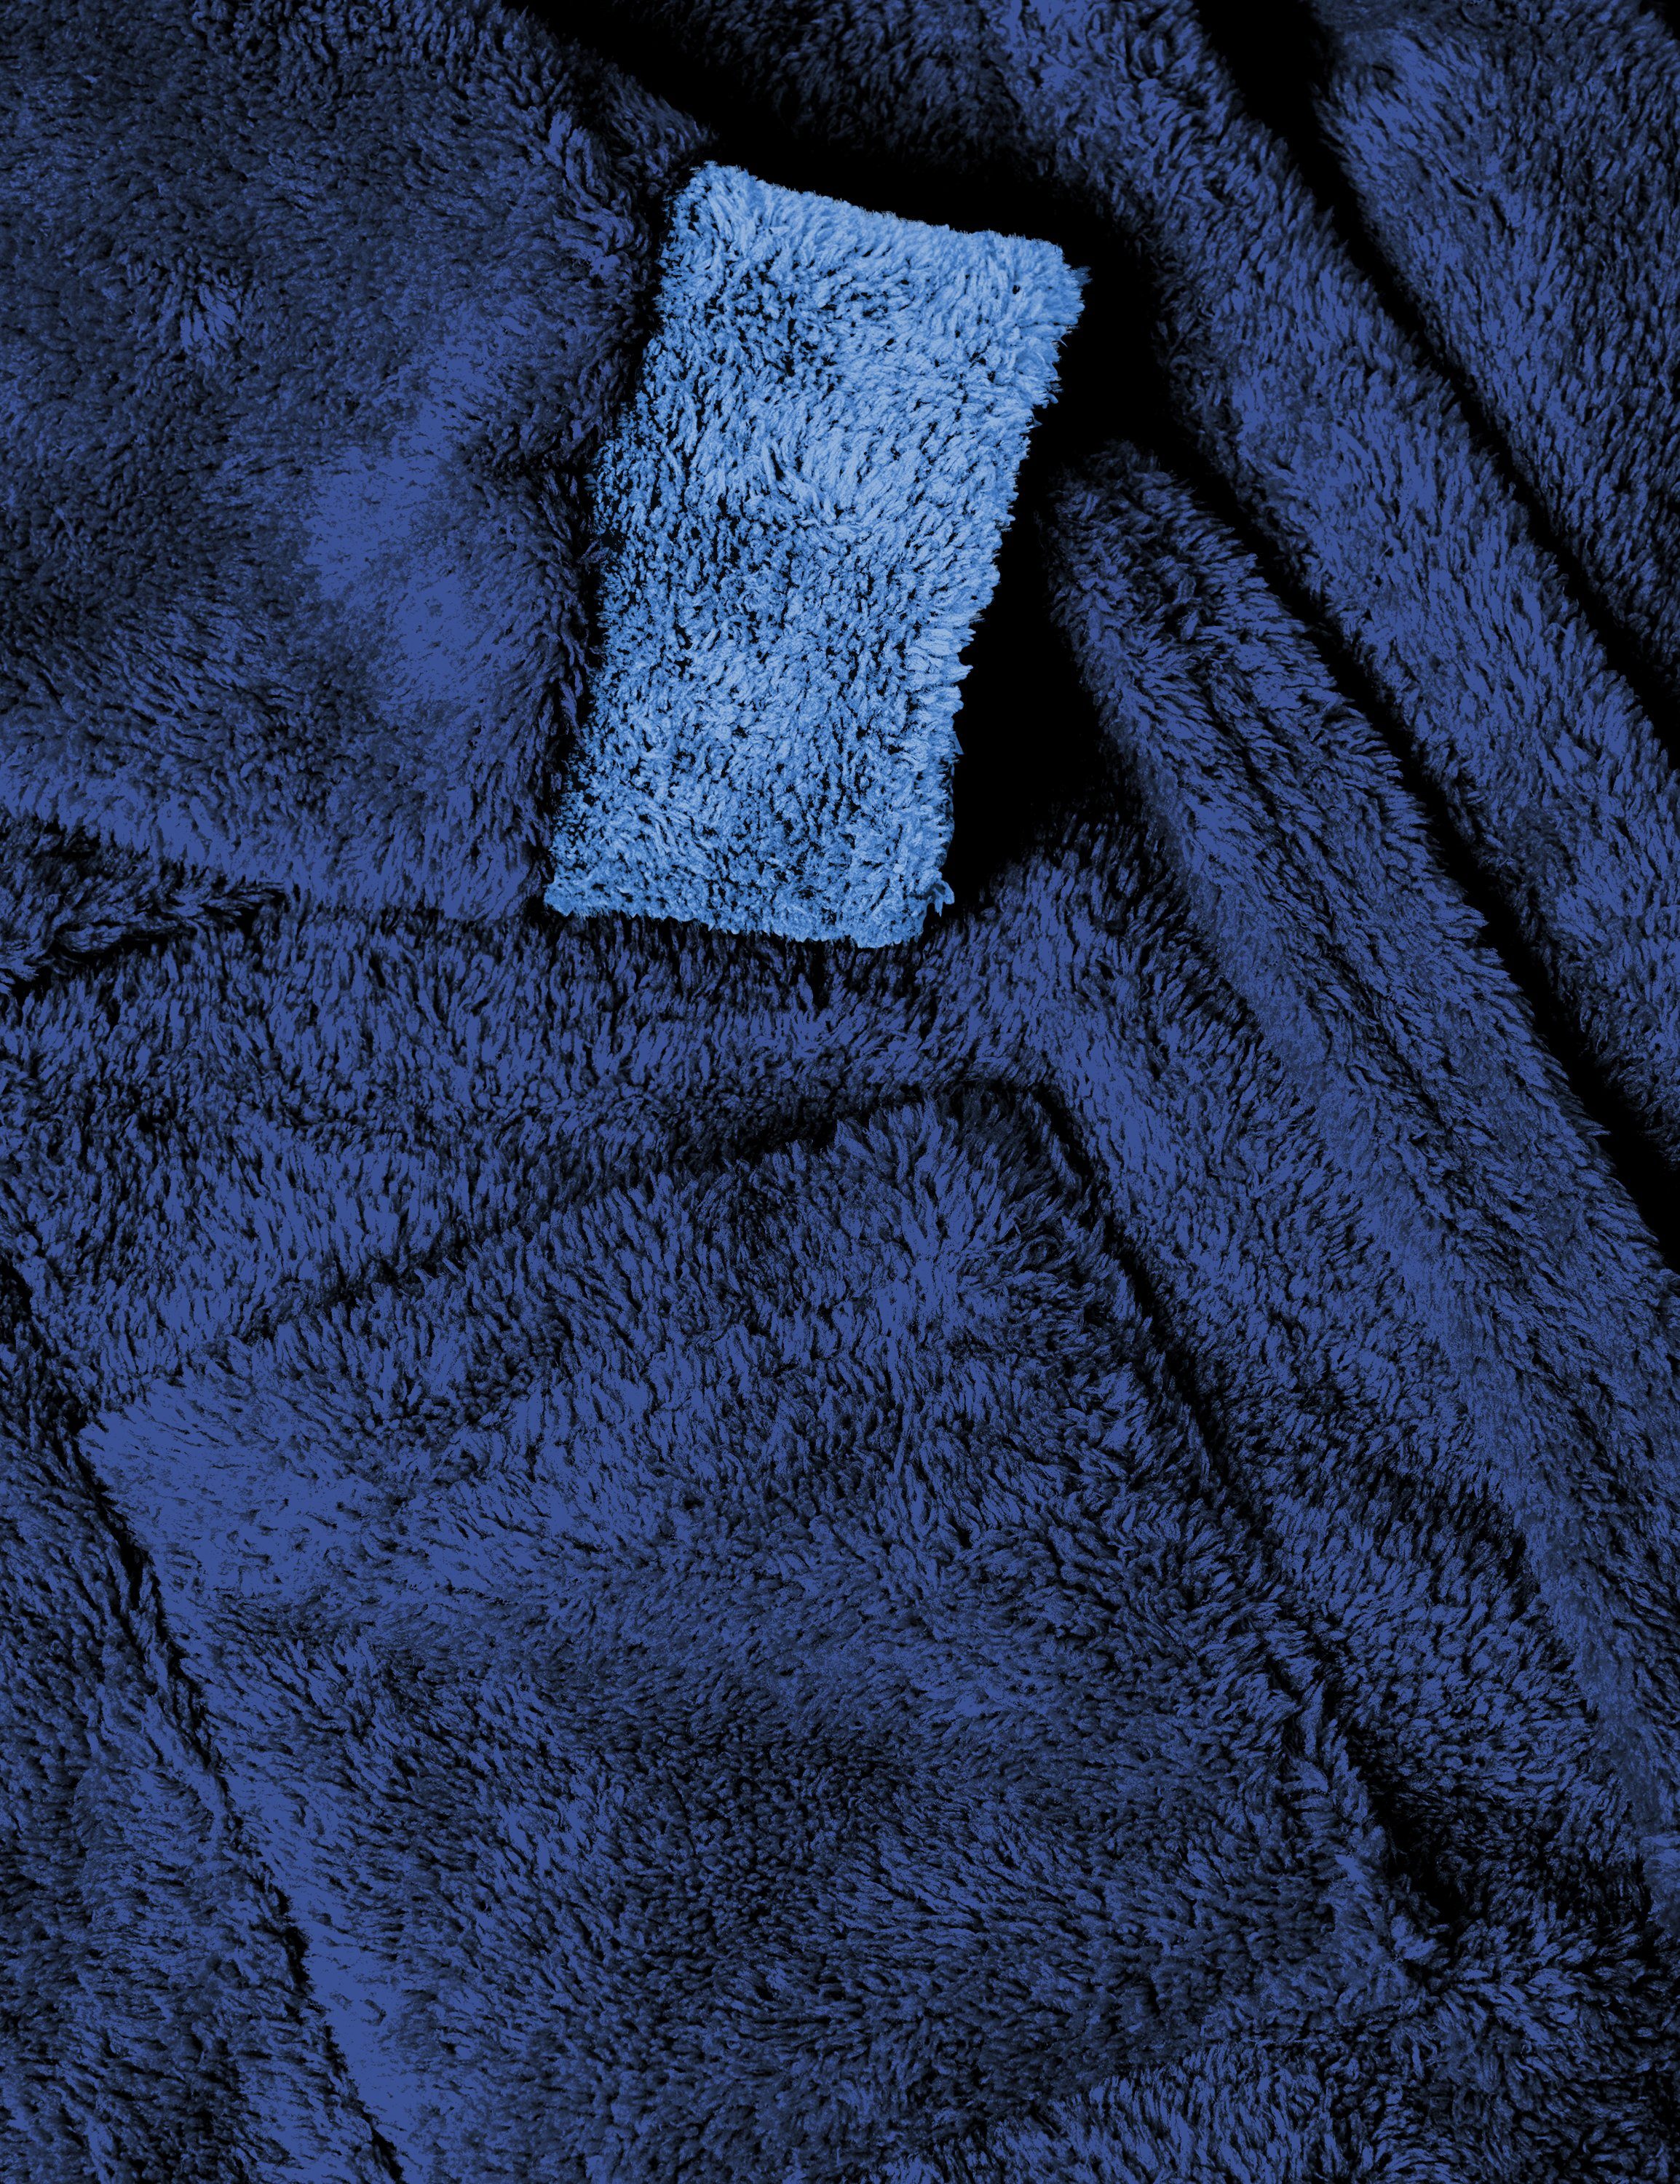 Jungen und (616/652/652) mit Bademantel Bademantel Timone Navyblau/Blau/Blau kurz, für Mädchen Polyester KIDS, Kaputze